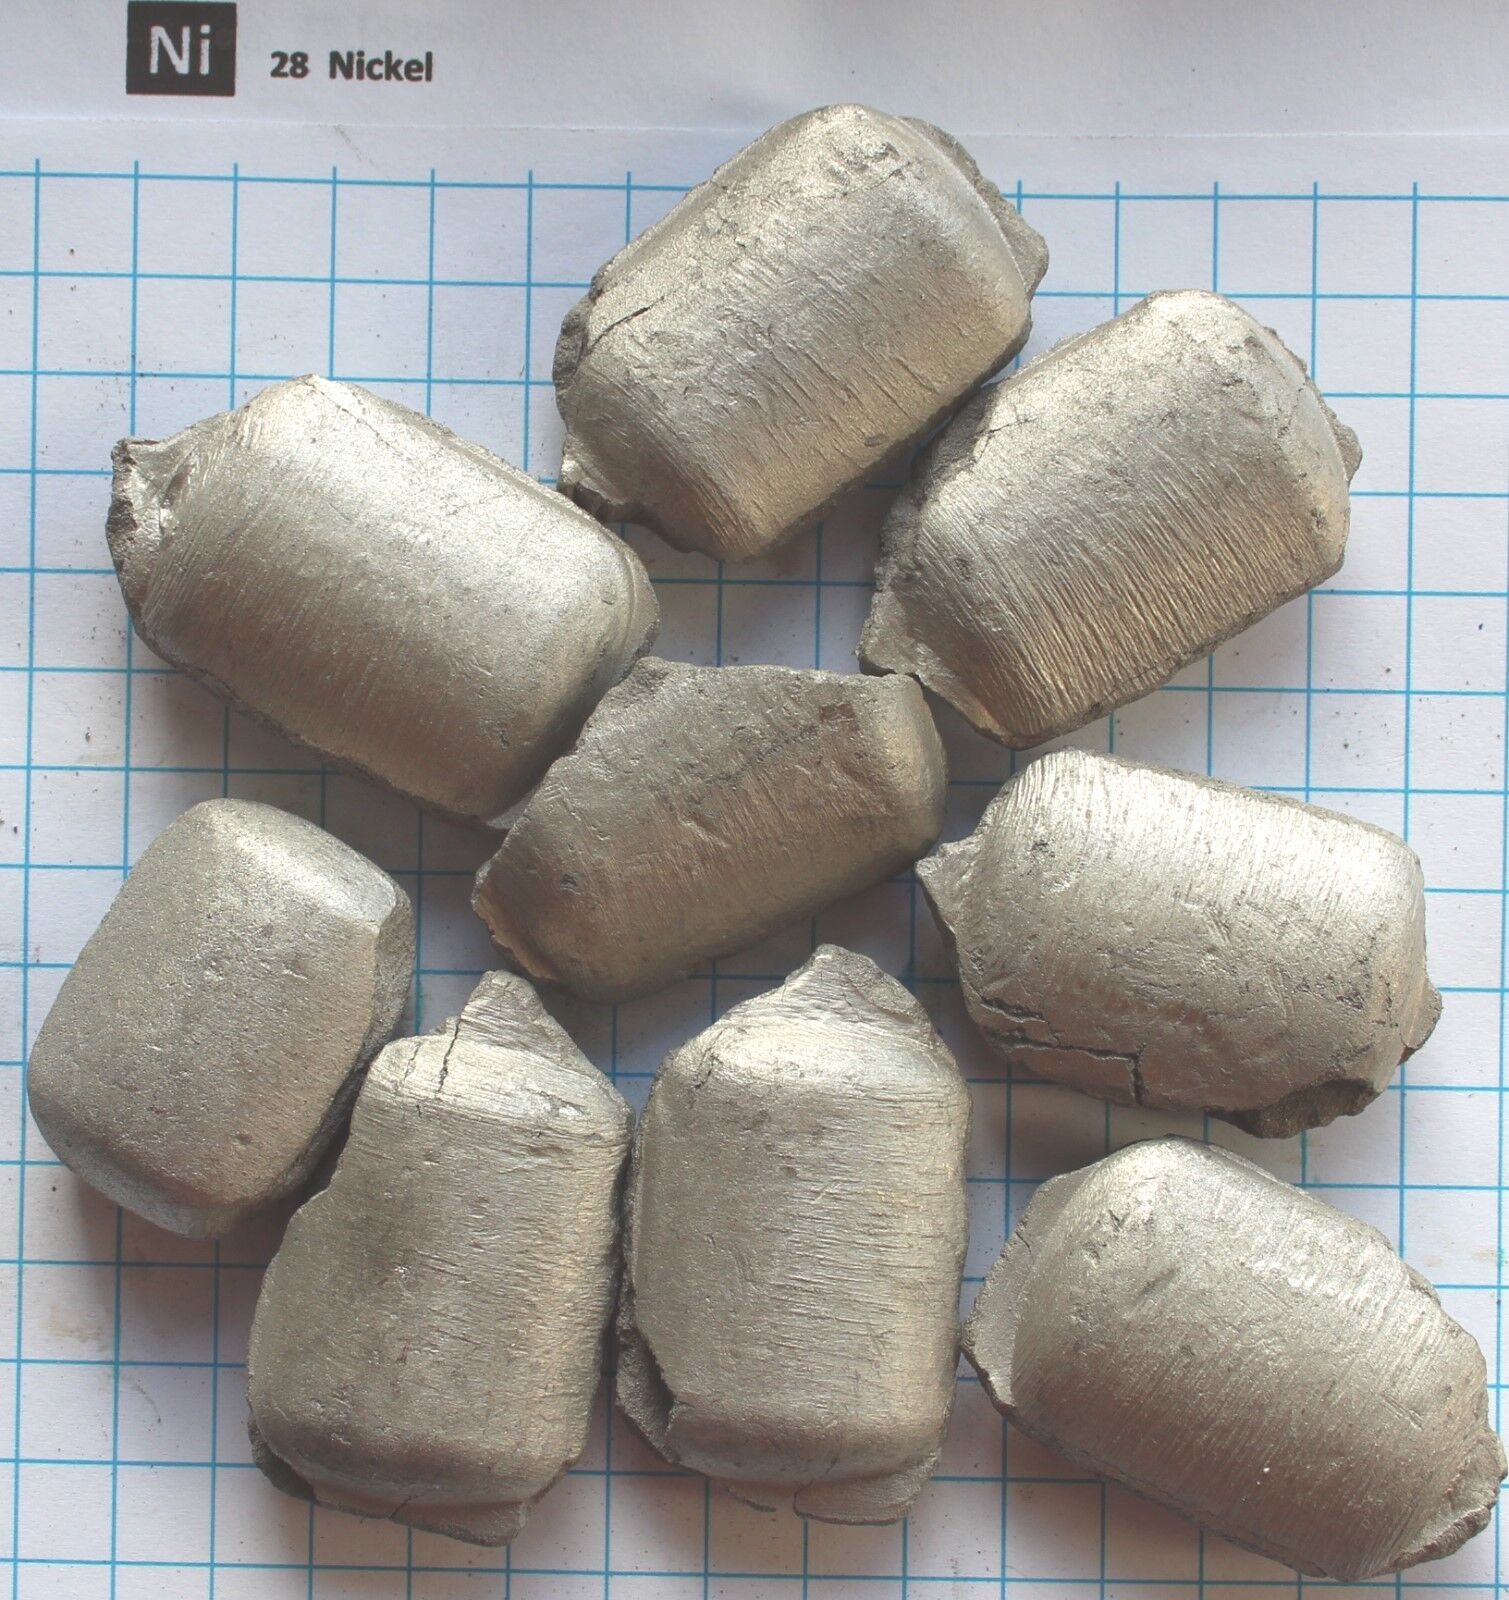 1 kilogram 2.2LB 99.8% Nickel metal brikets element 28 sample